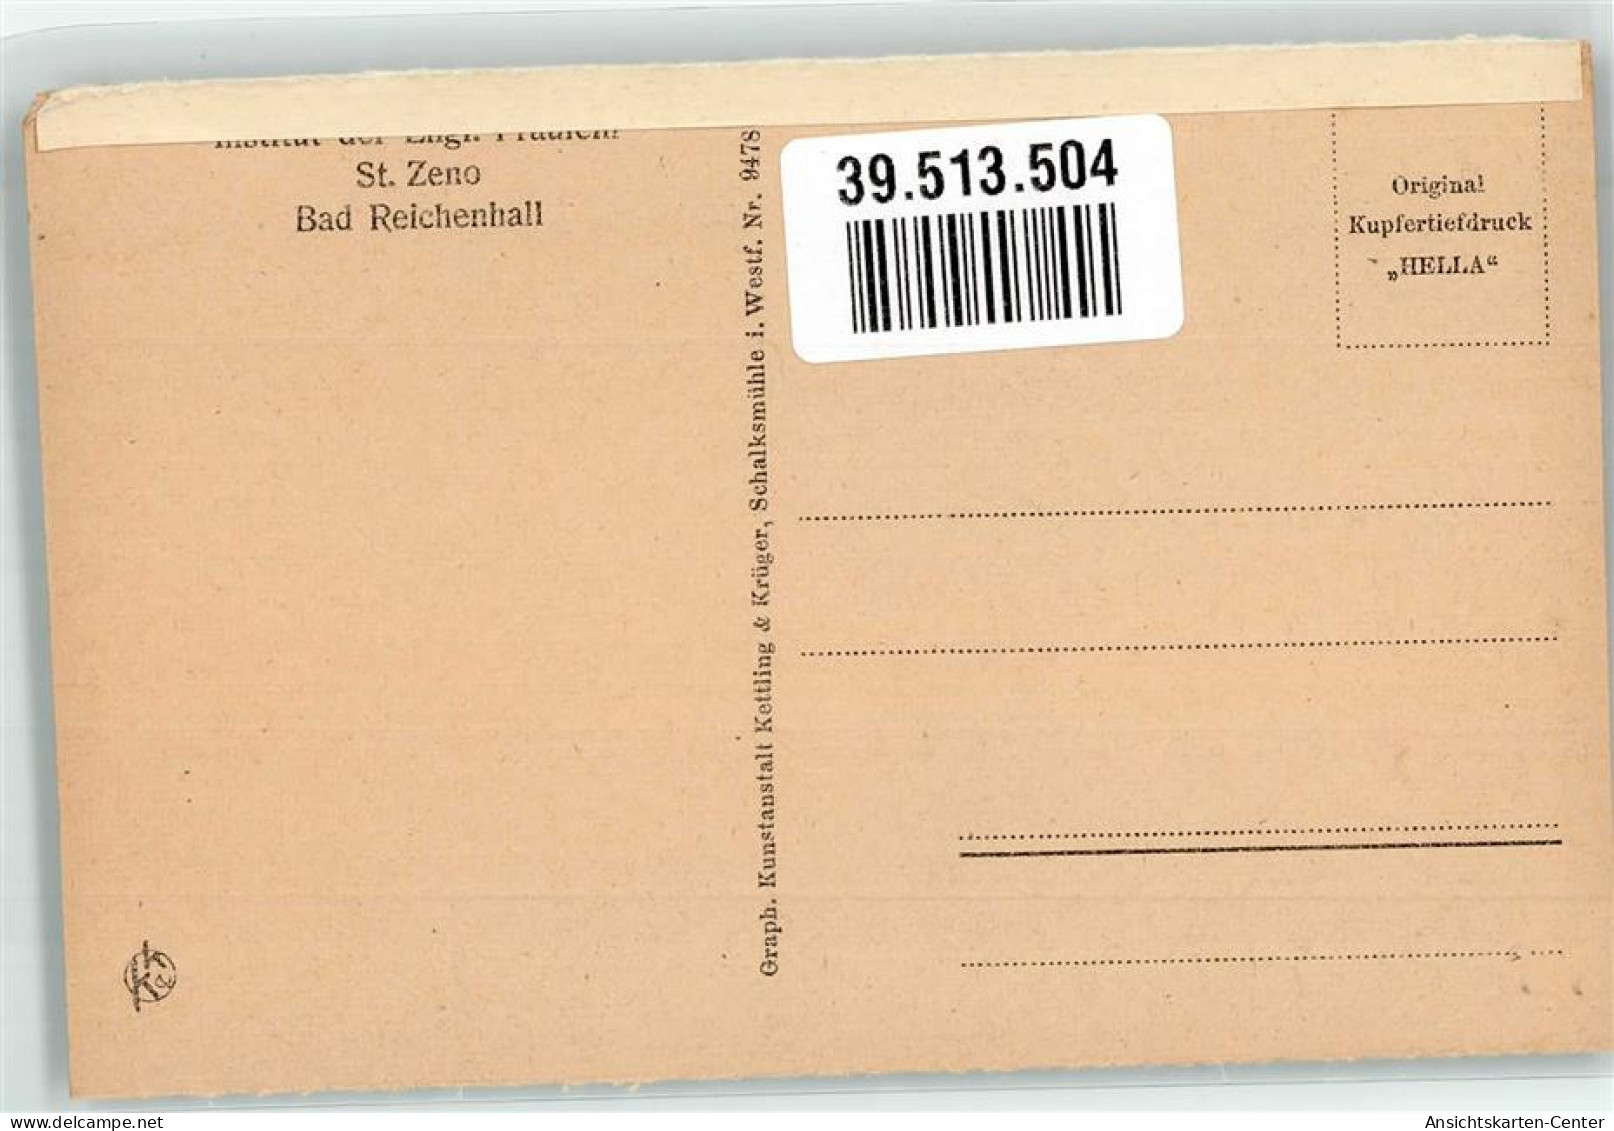 39513504 - Bad Reichenhall - Bad Reichenhall